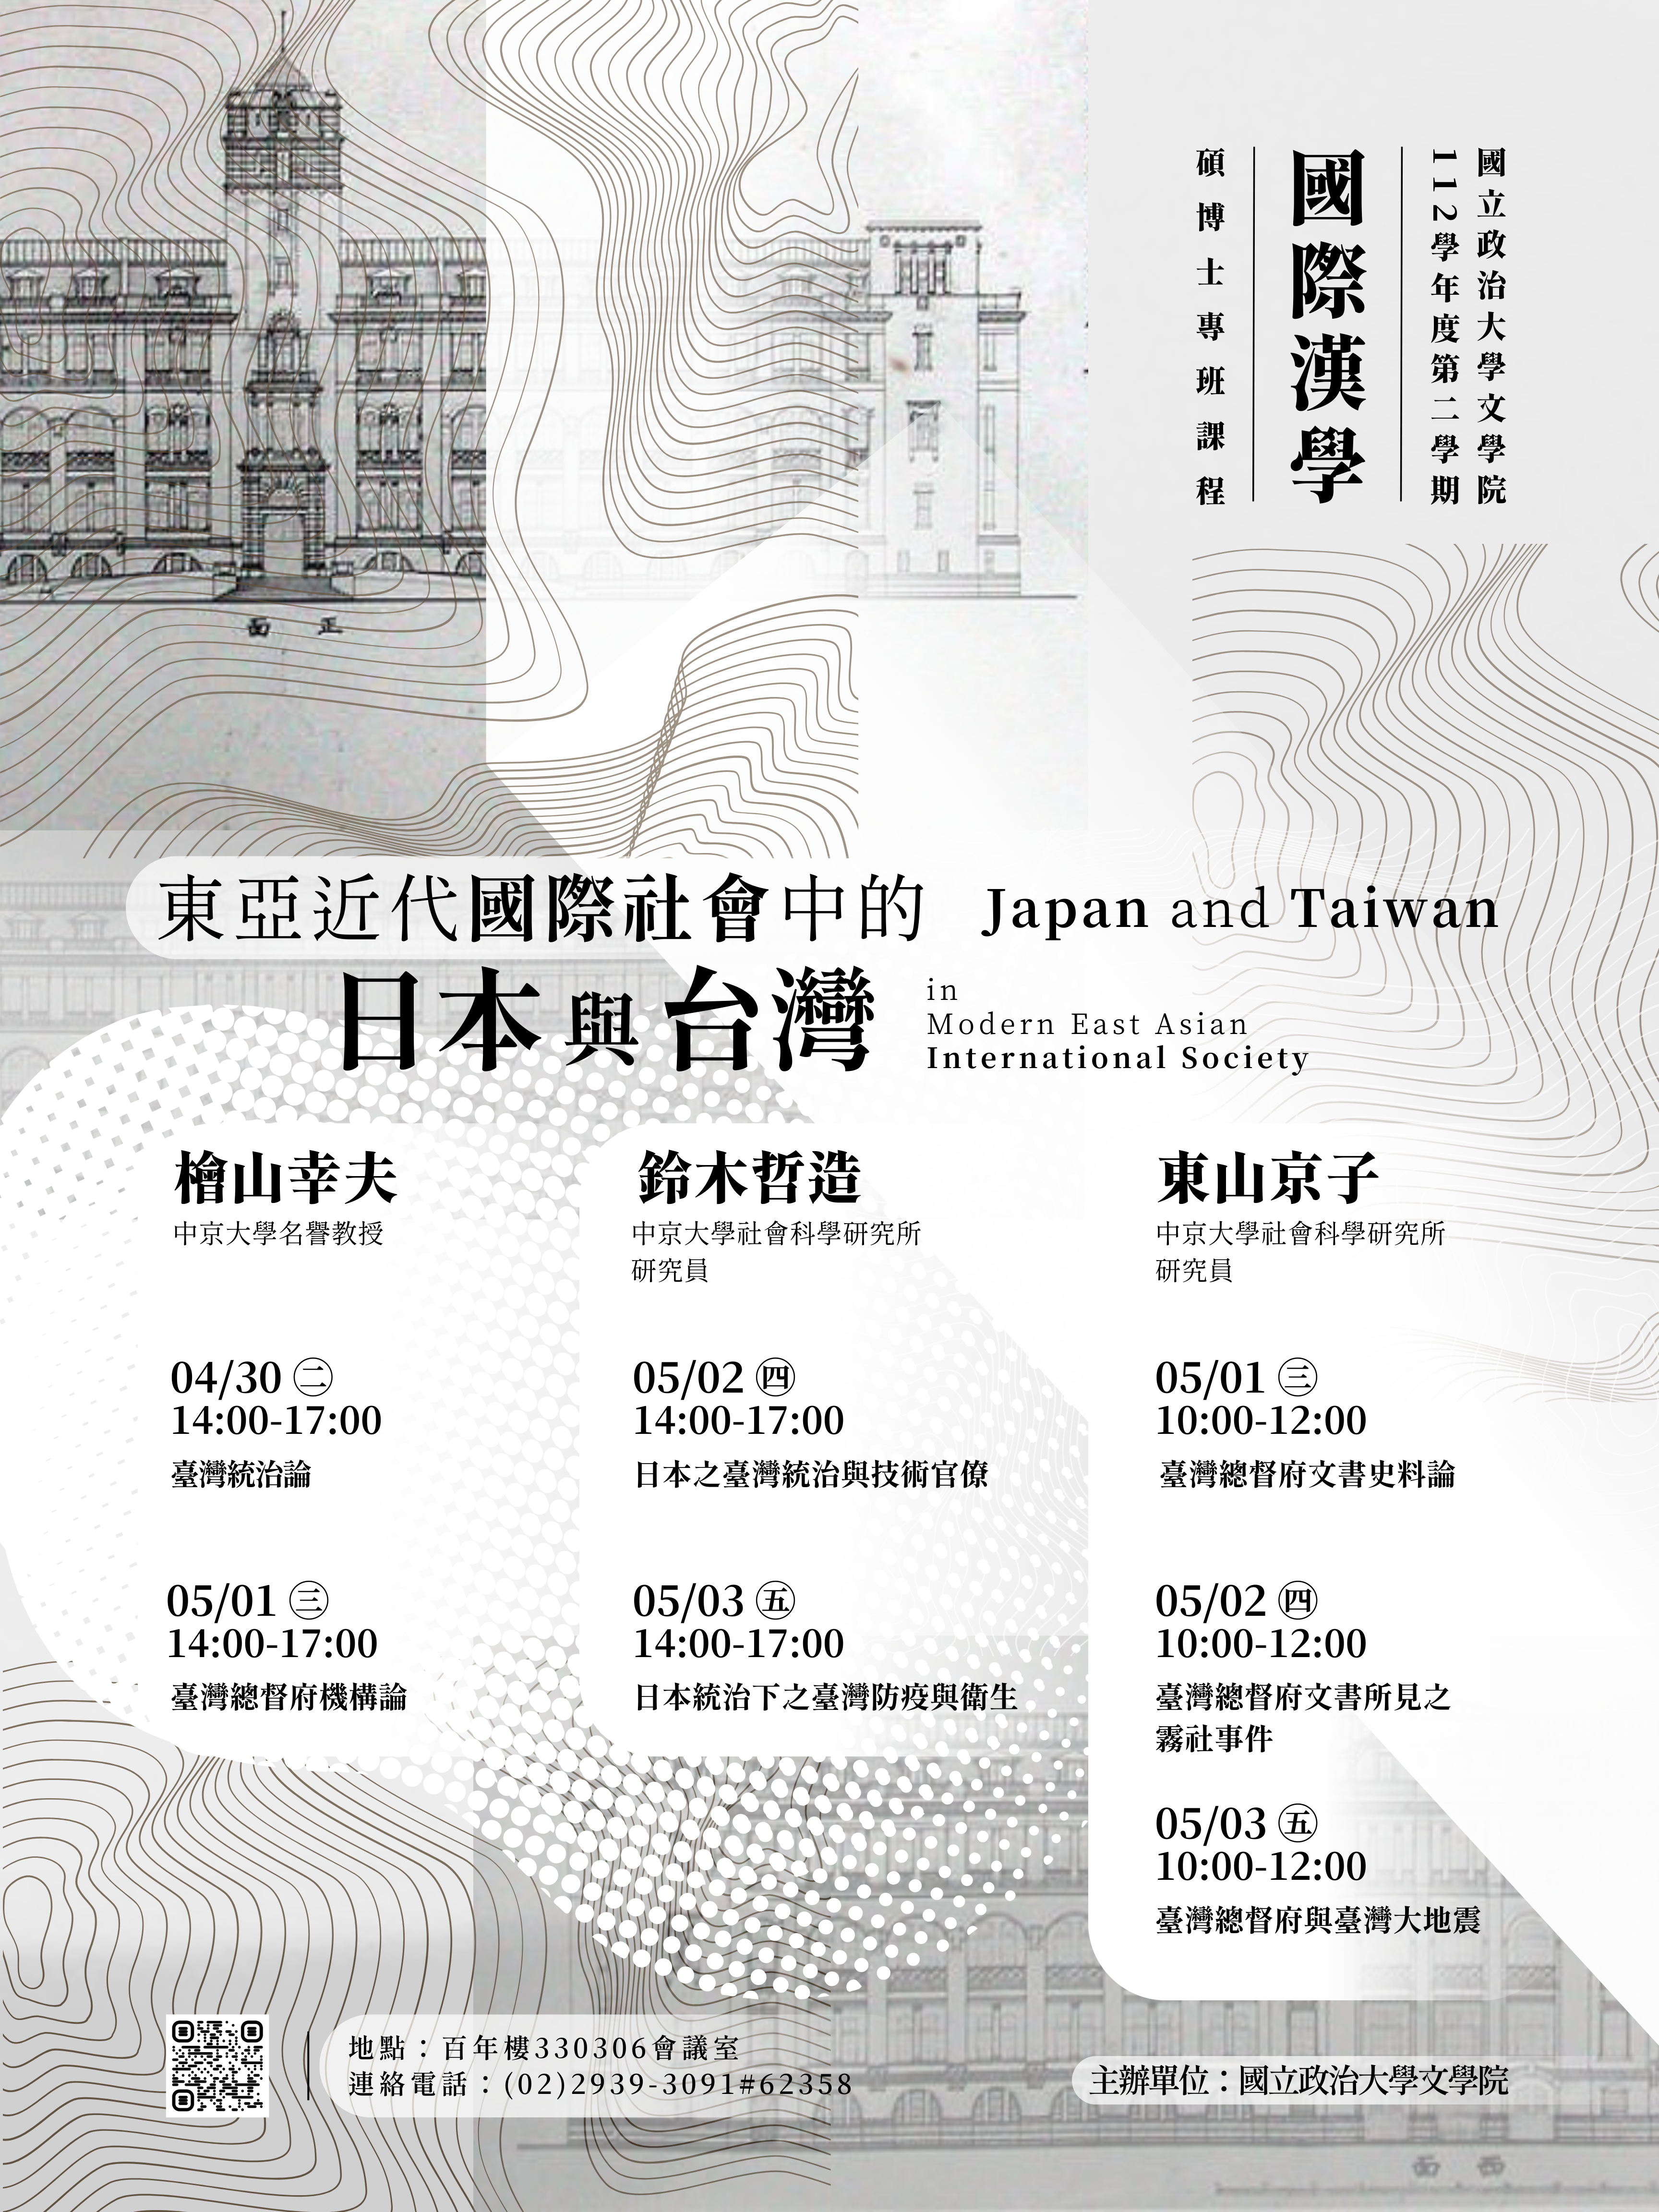 東亞近代國際社會中的日本與台灣